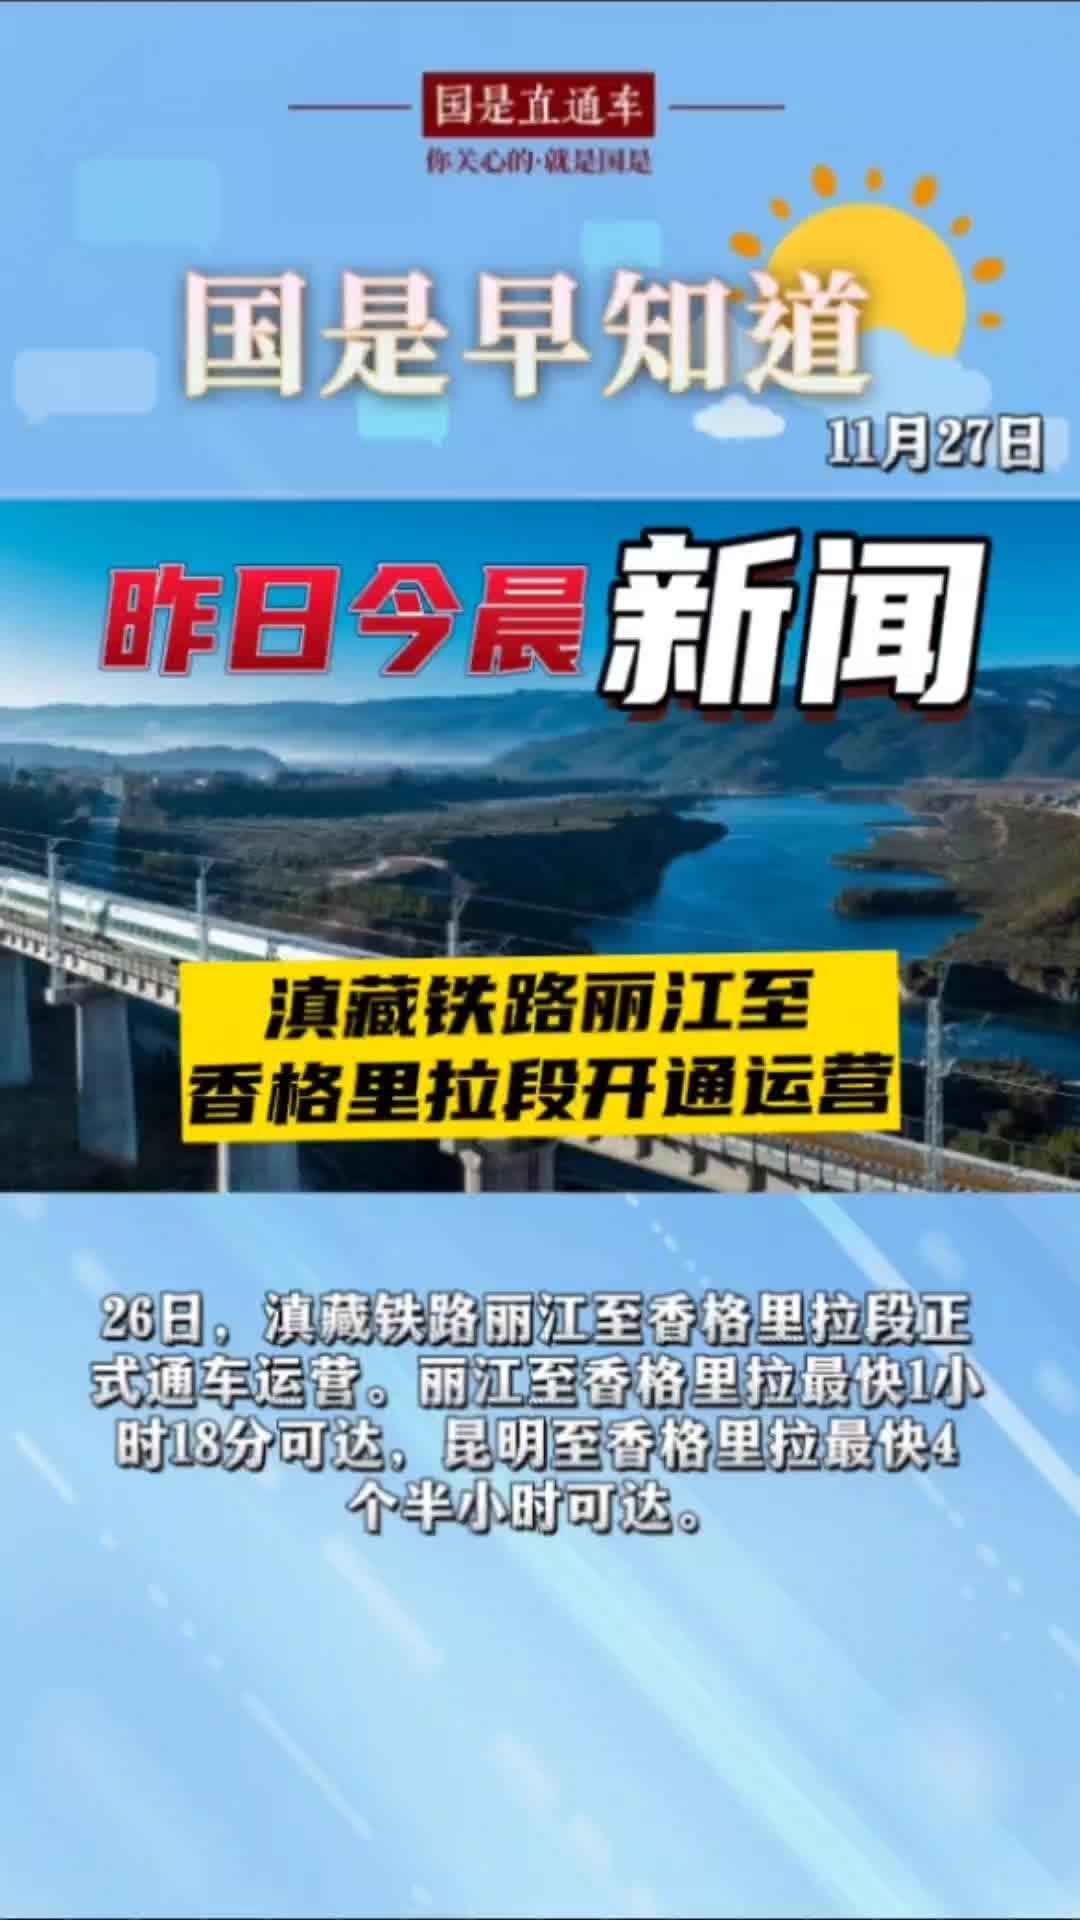 11月27日国是早知道:滇藏铁路丽江至香格里拉段开通运营